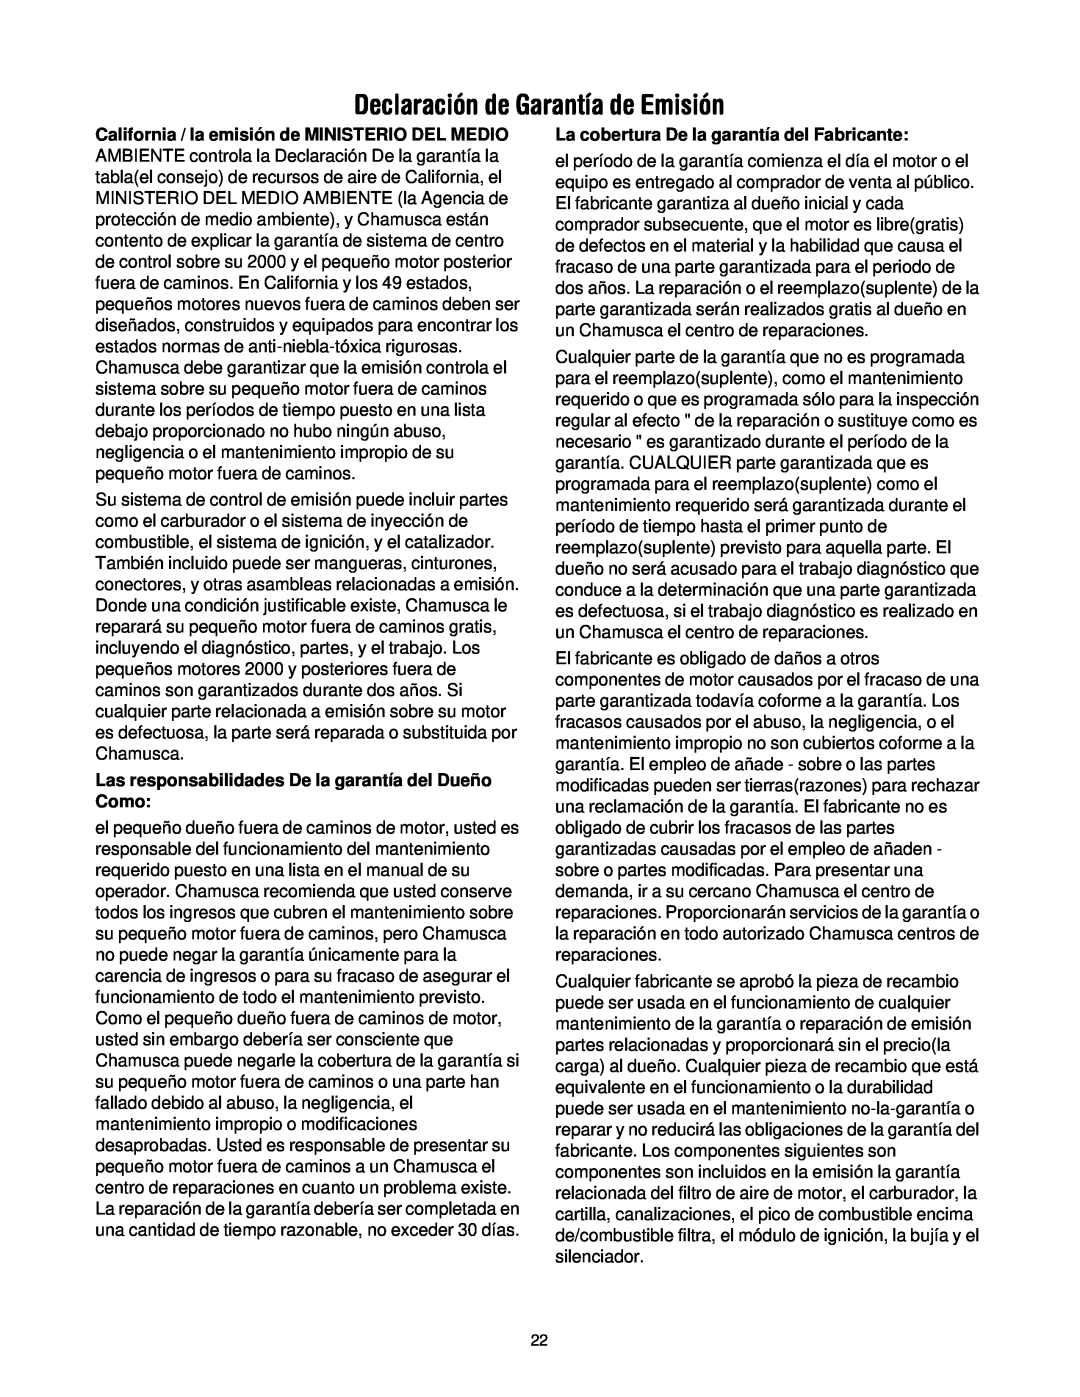 Craftsman 316.2927 manual Declaración de Garantía de Emisión, Las responsabilidades De la garantía del Dueño Como 